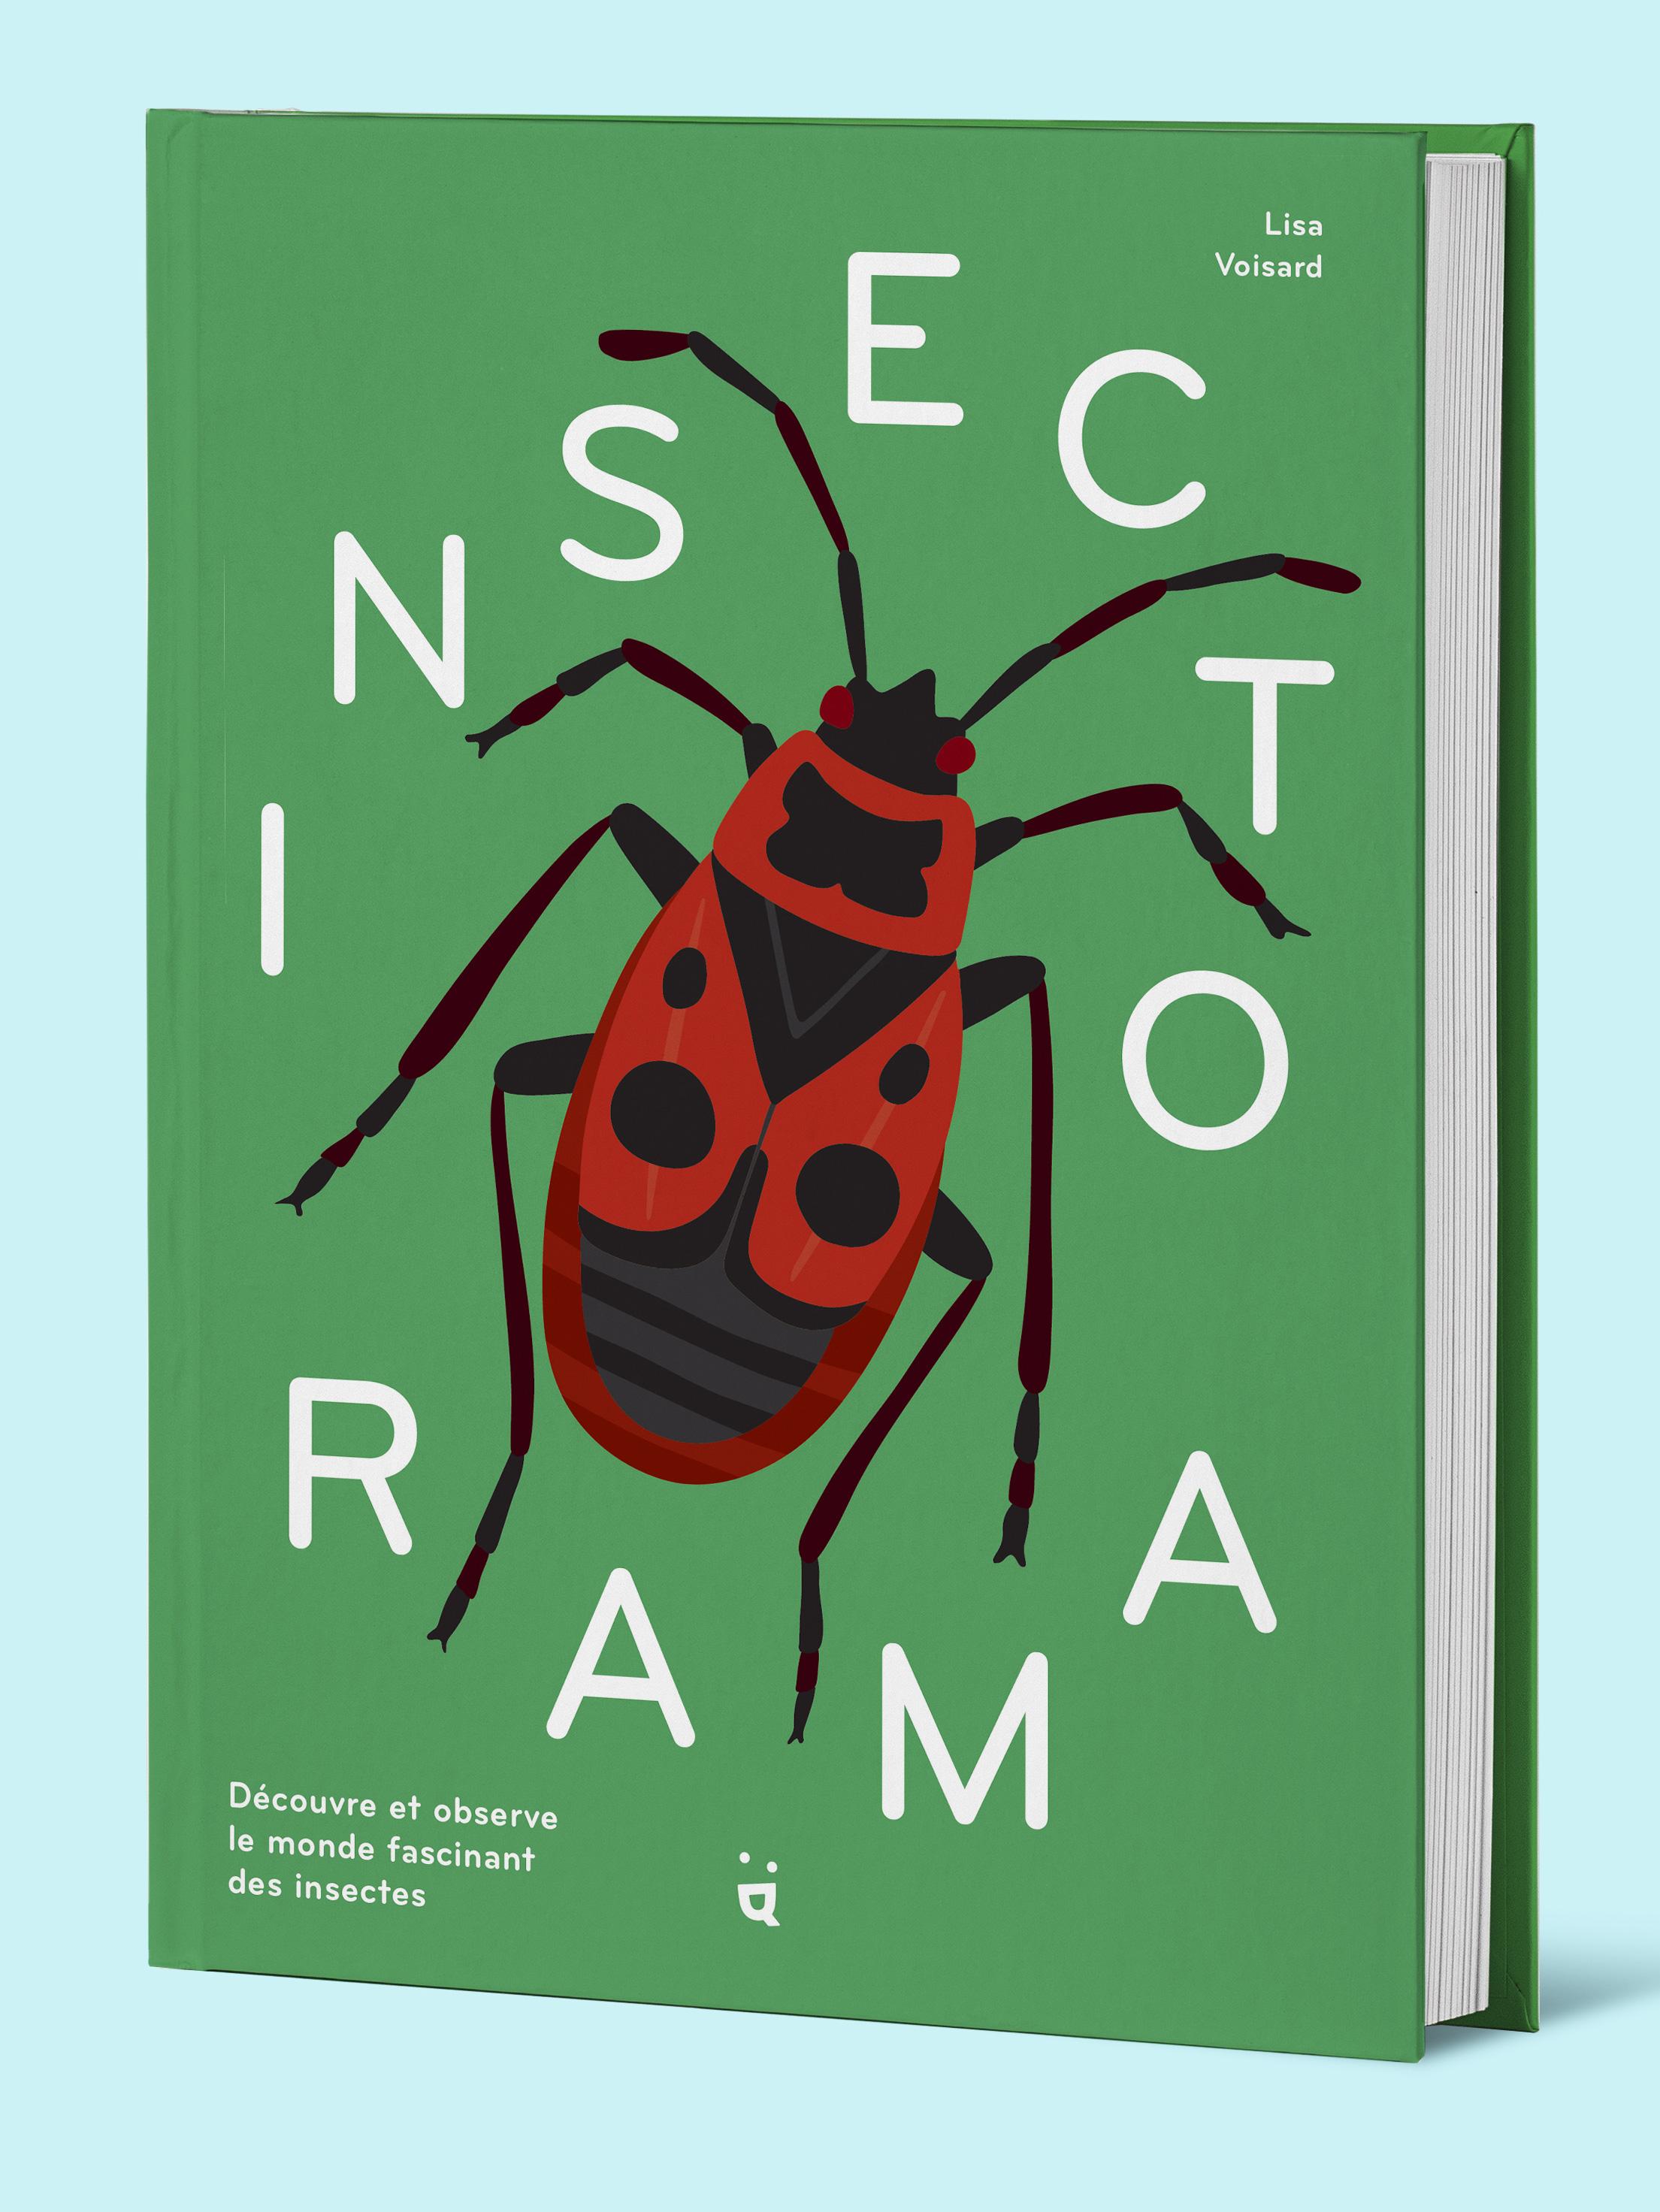 La couverture du livre "Insectorama" de Lisa Voisard. [Helvetiq]